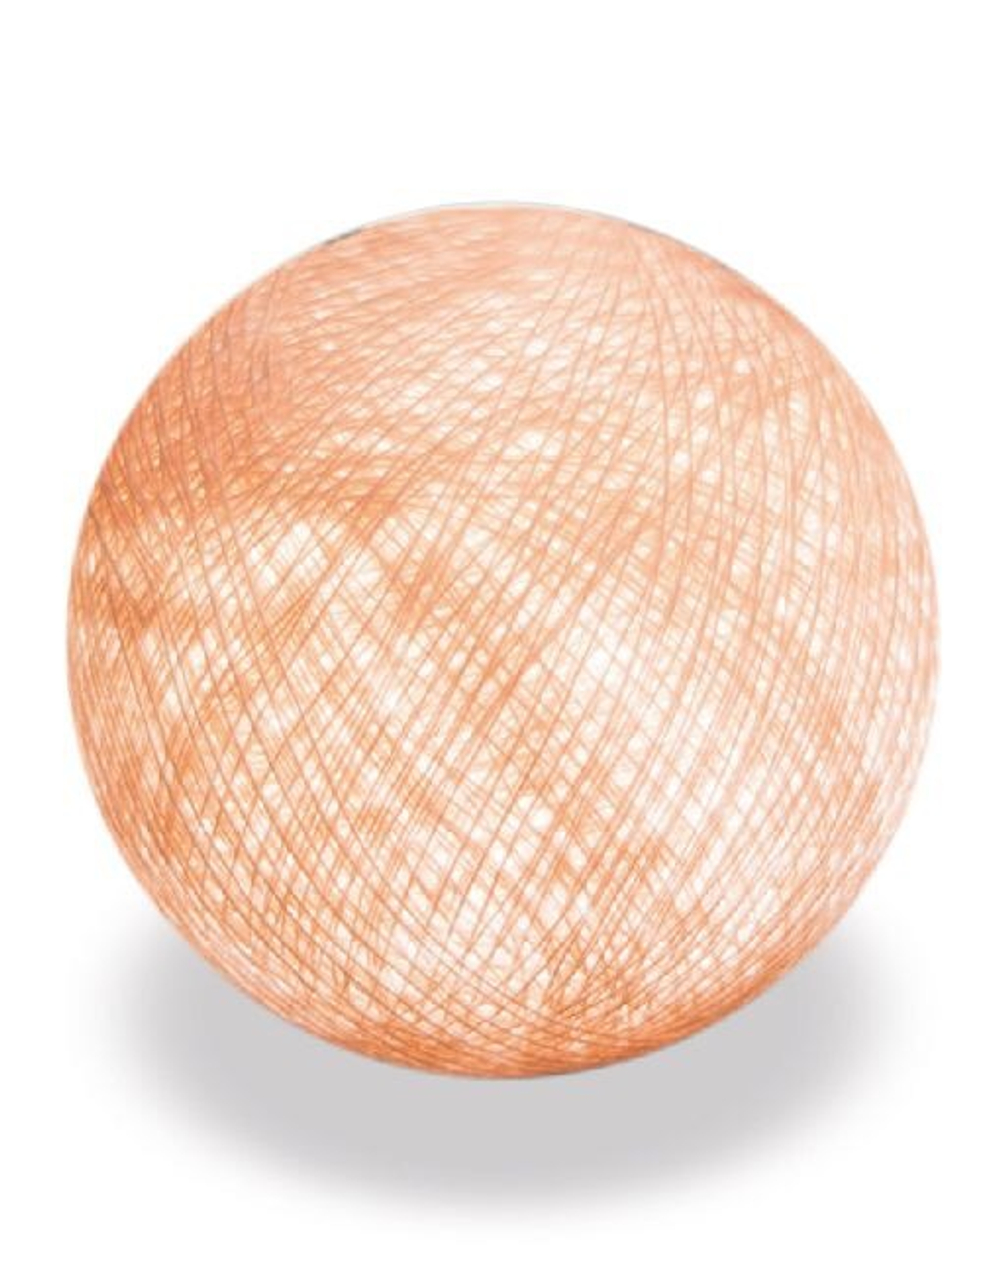 Хлопковый шарик персик